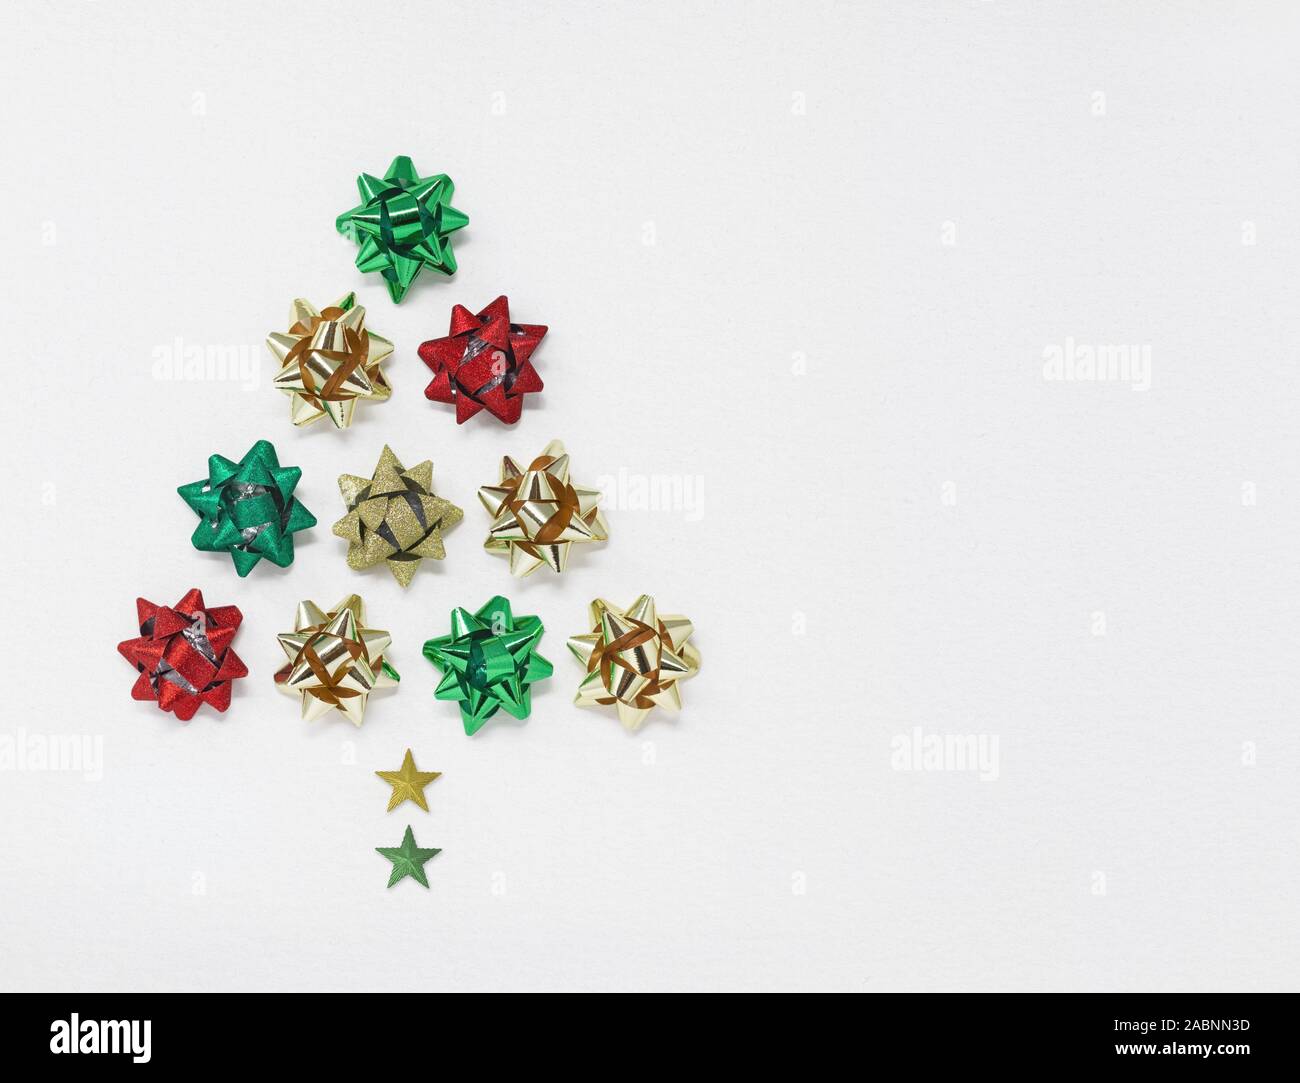 Albero di Natale fatto di forma di archi e stelle, isolata su uno sfondo bianco con spazio di copia Foto Stock